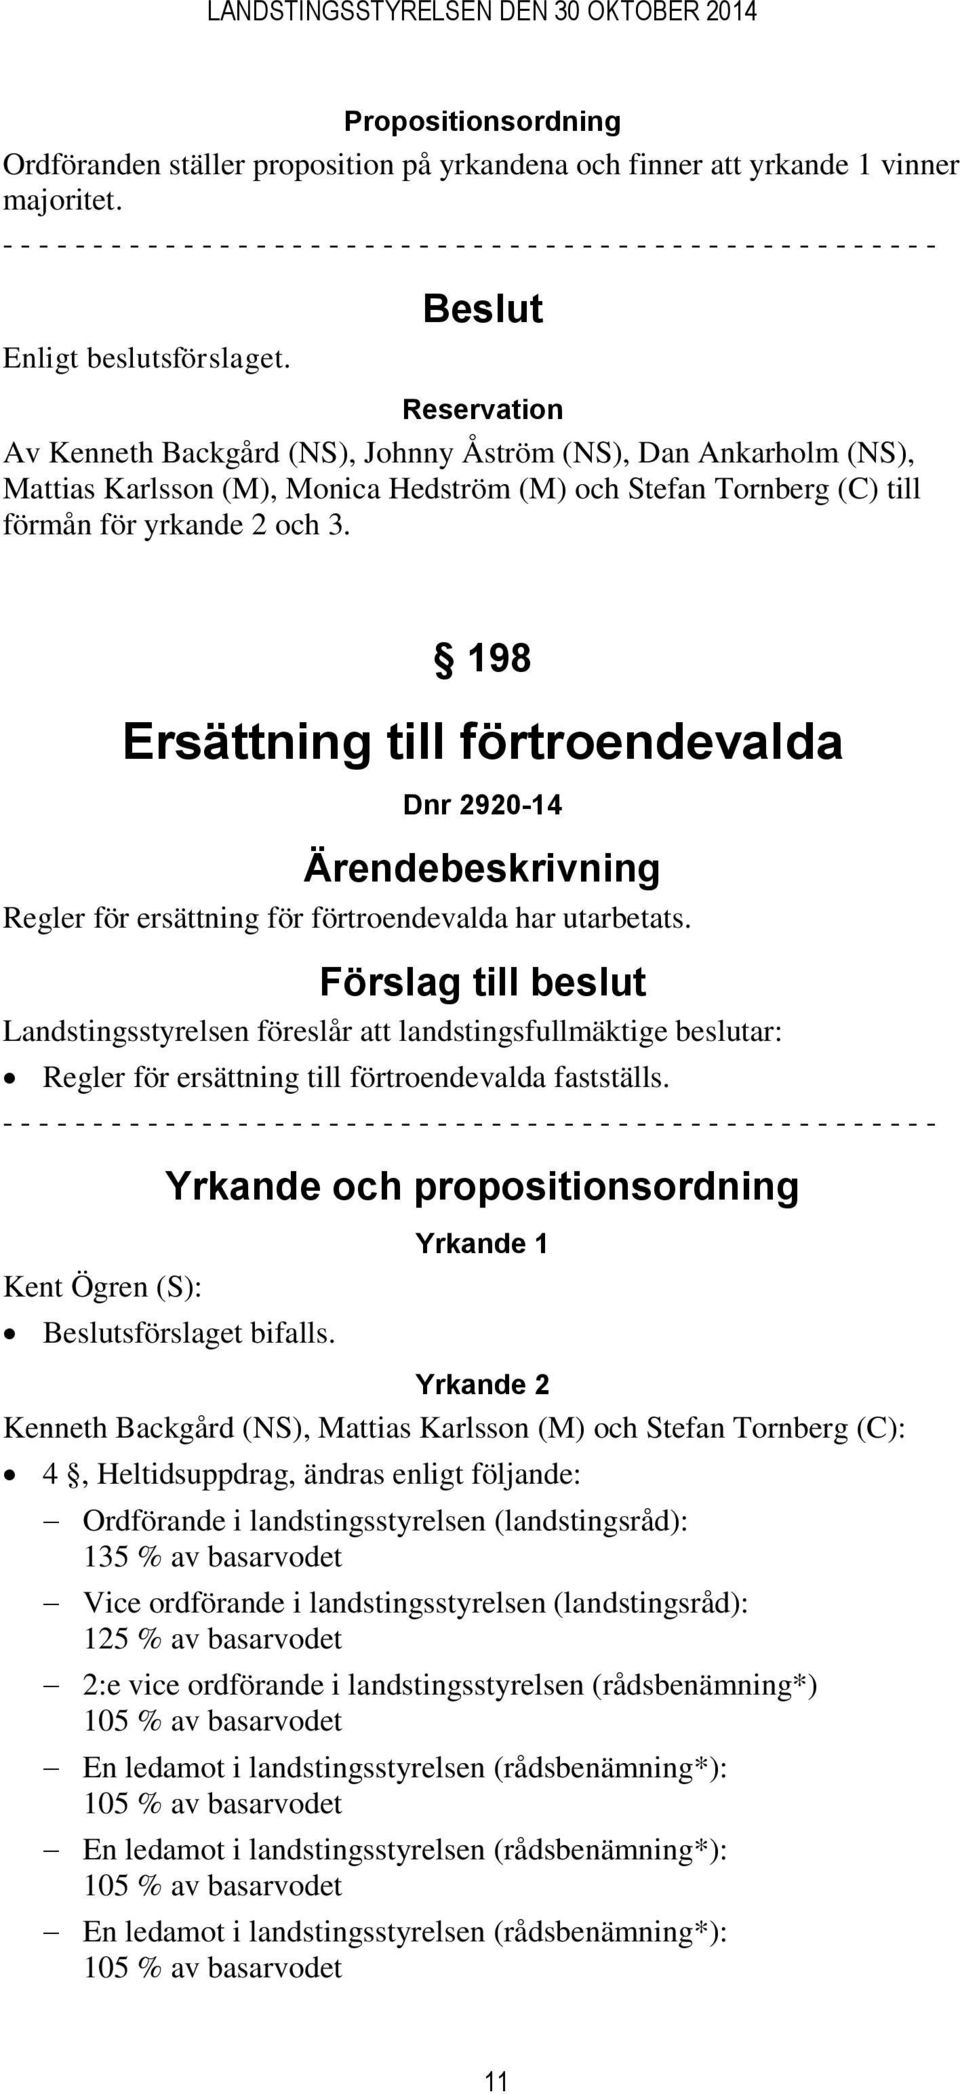 (M), Monica Hedström (M) och Stefan Tornberg (C) till förmån för yrkande 2 och 3. 198 Ersättning till förtroendevalda Dnr 2920-14 Regler för ersättning för förtroendevalda har utarbetats.